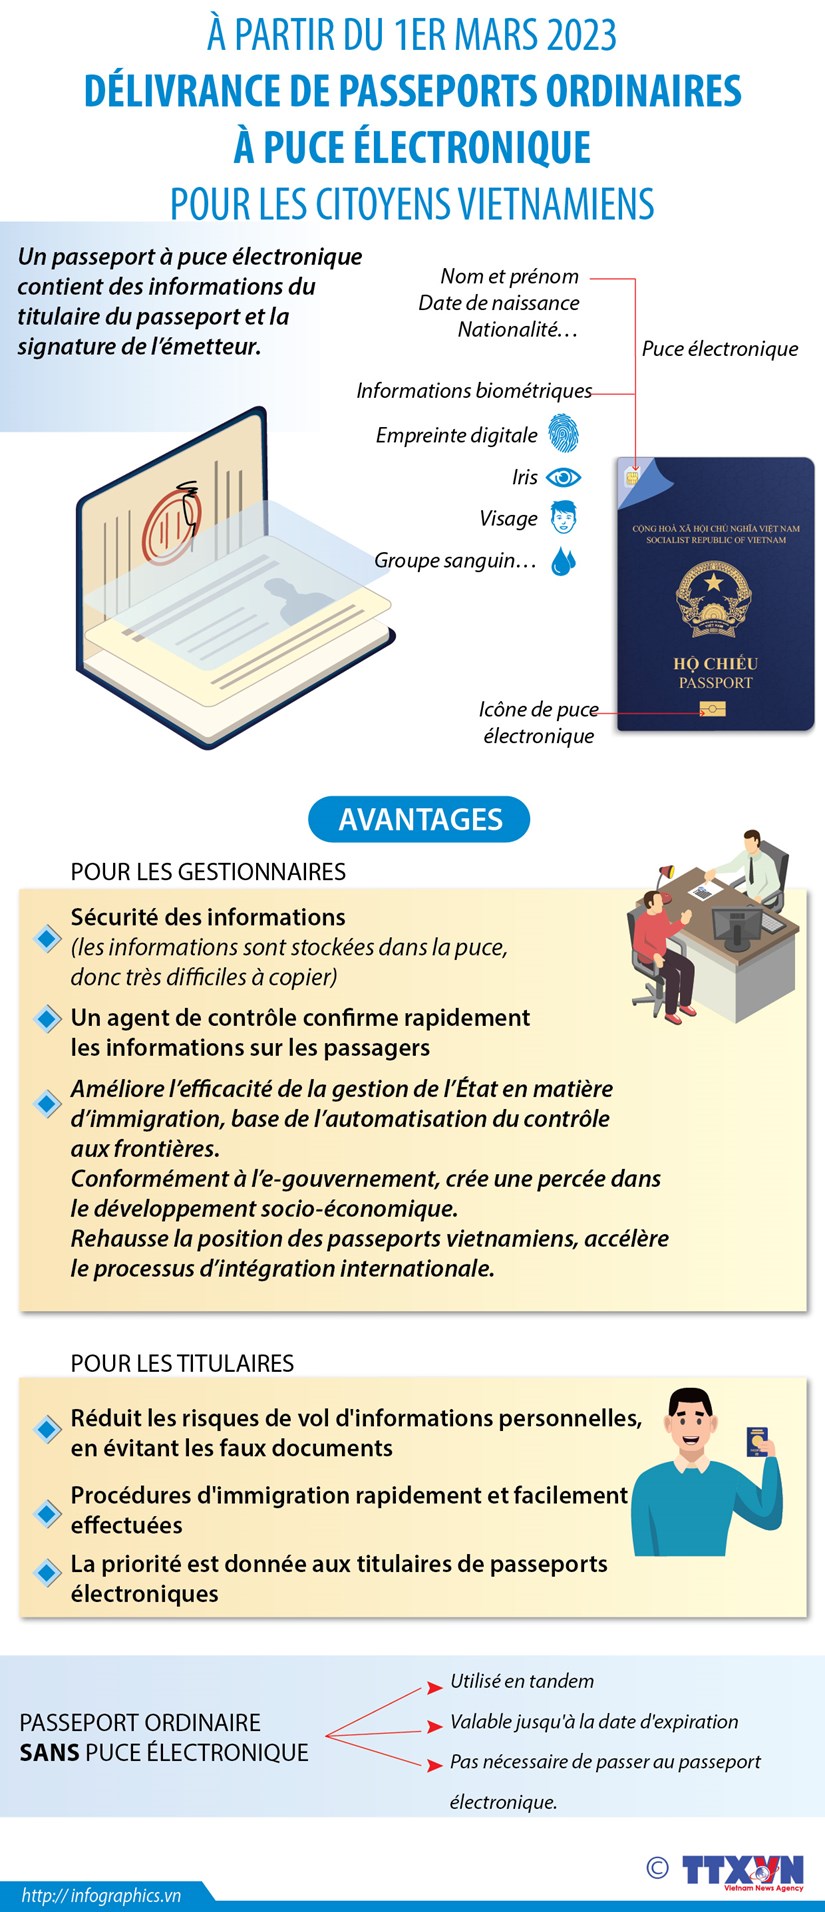 Delivrance de passeports ordinaires a puce electronique a partir du 1er mars 2023 hinh anh 1